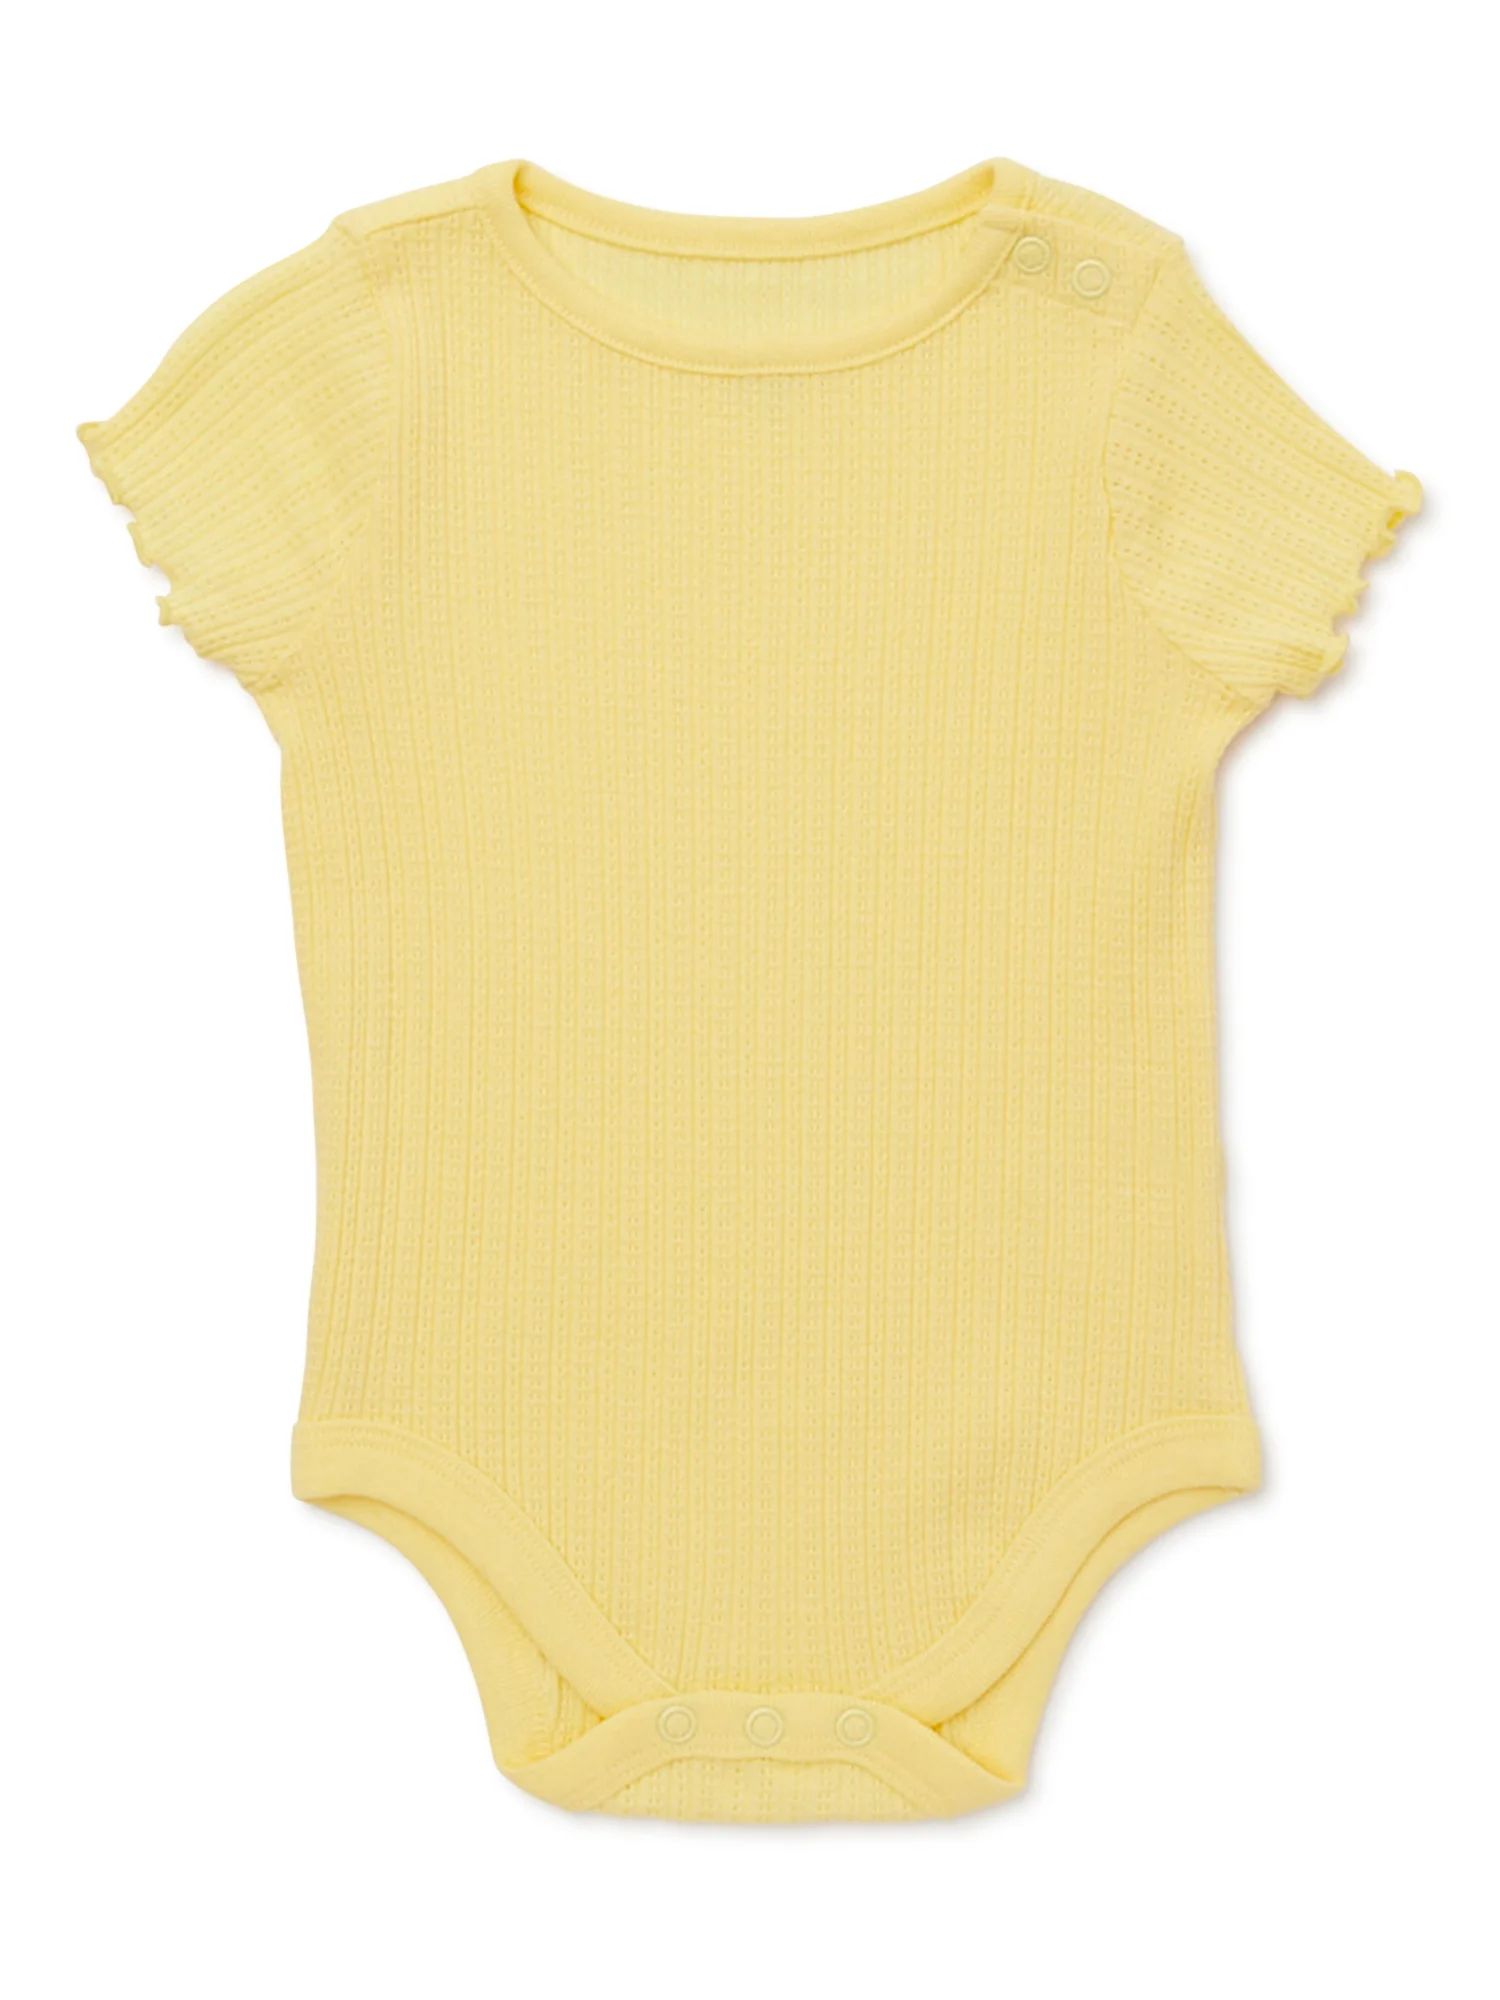 Garanimals Baby Girl Short Sleeve Pointelle Solid Bodysuit, Sizes 0-24 Months | Walmart (US)